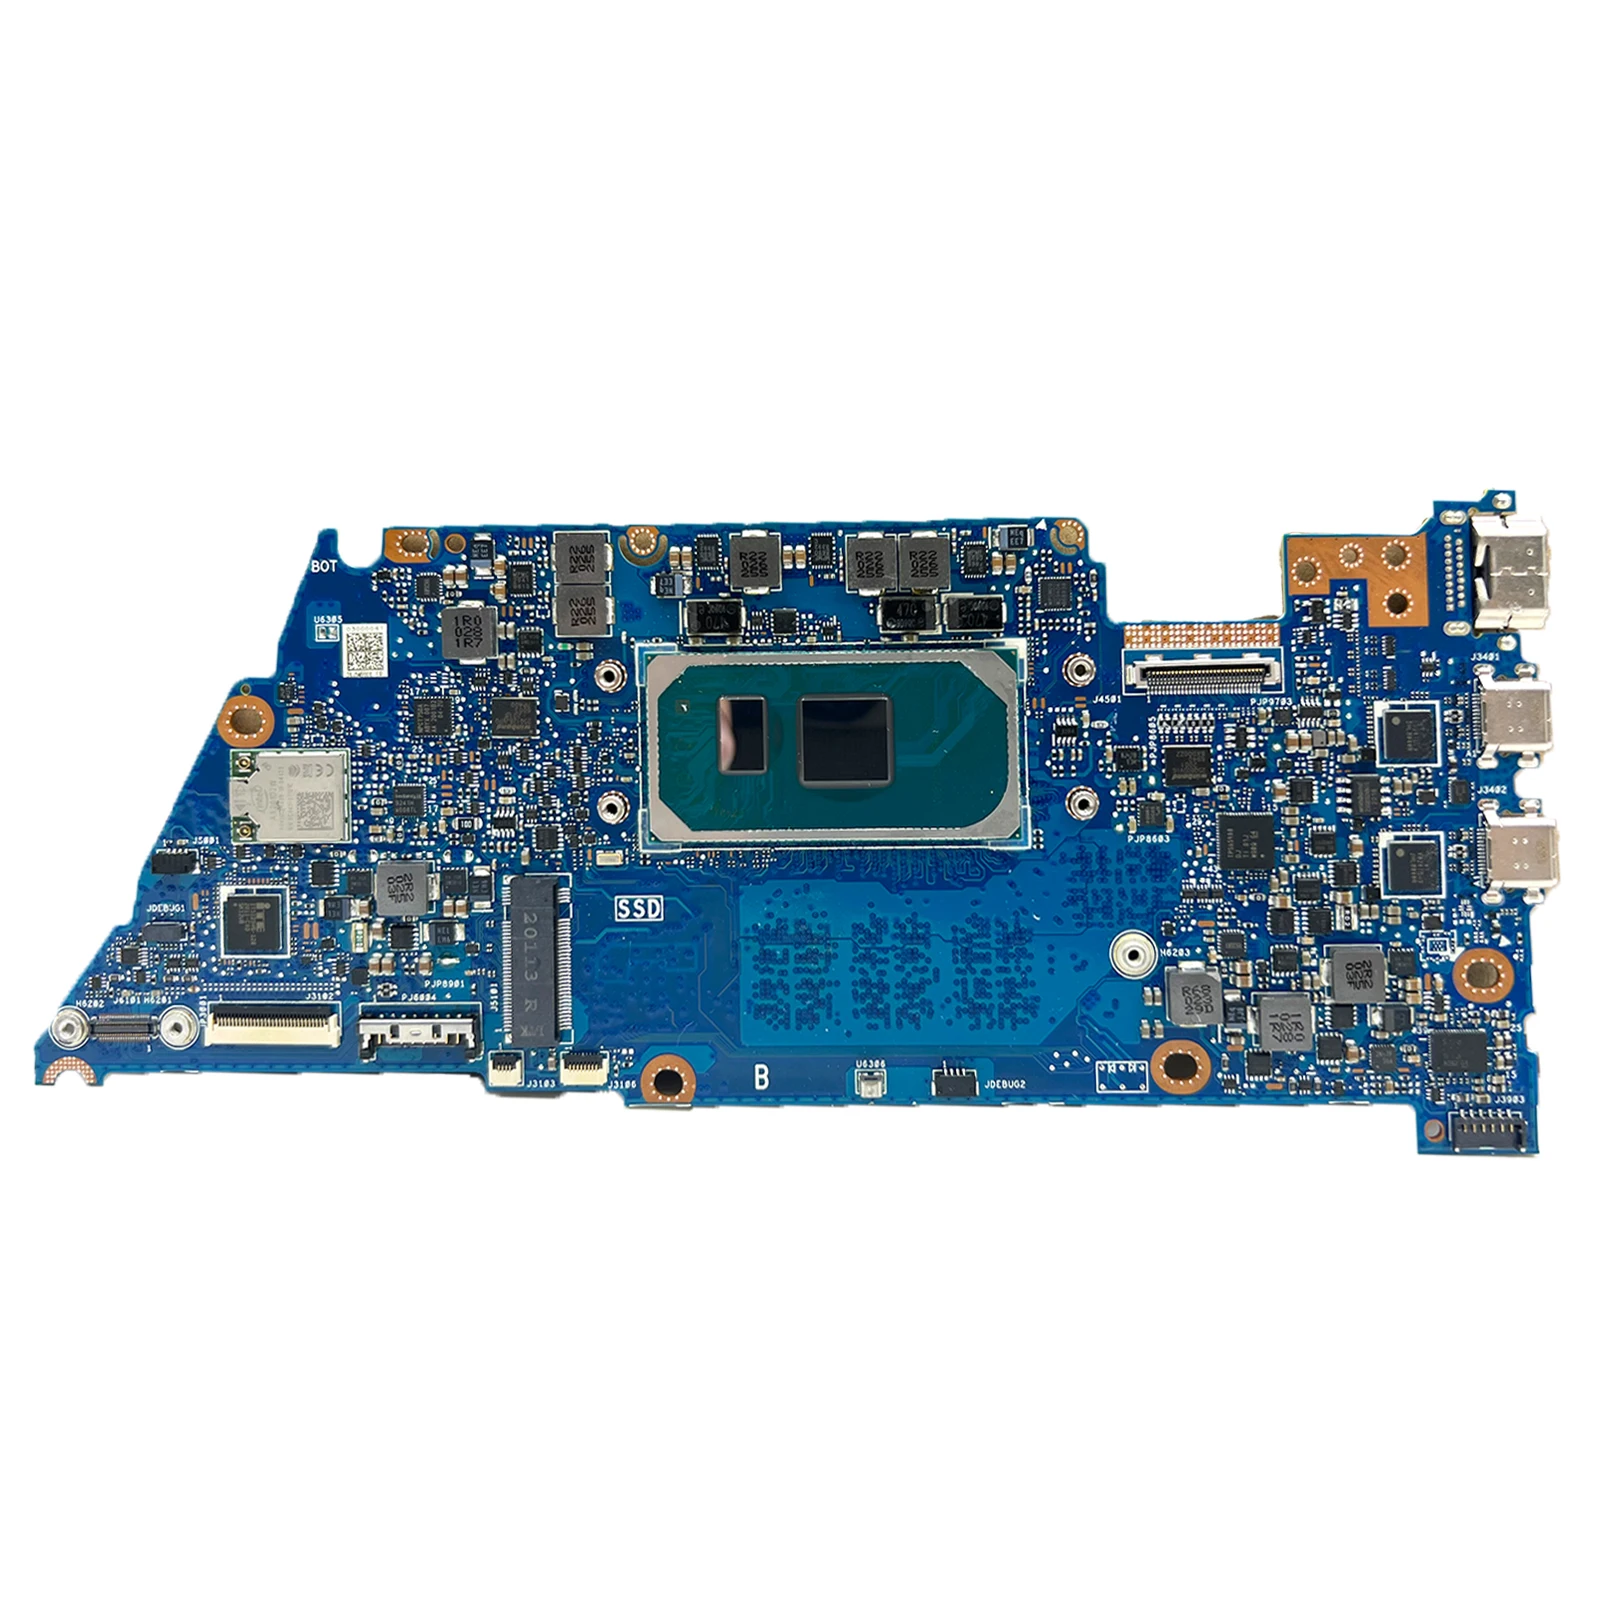 

UX363JA i5-1035G4 i7-1065G7 CPU 8G 16G RAM Laptop Motherboard For Asus Zenbook UX363 UX363JA BX363JA RX363JA Notebook Mainboard